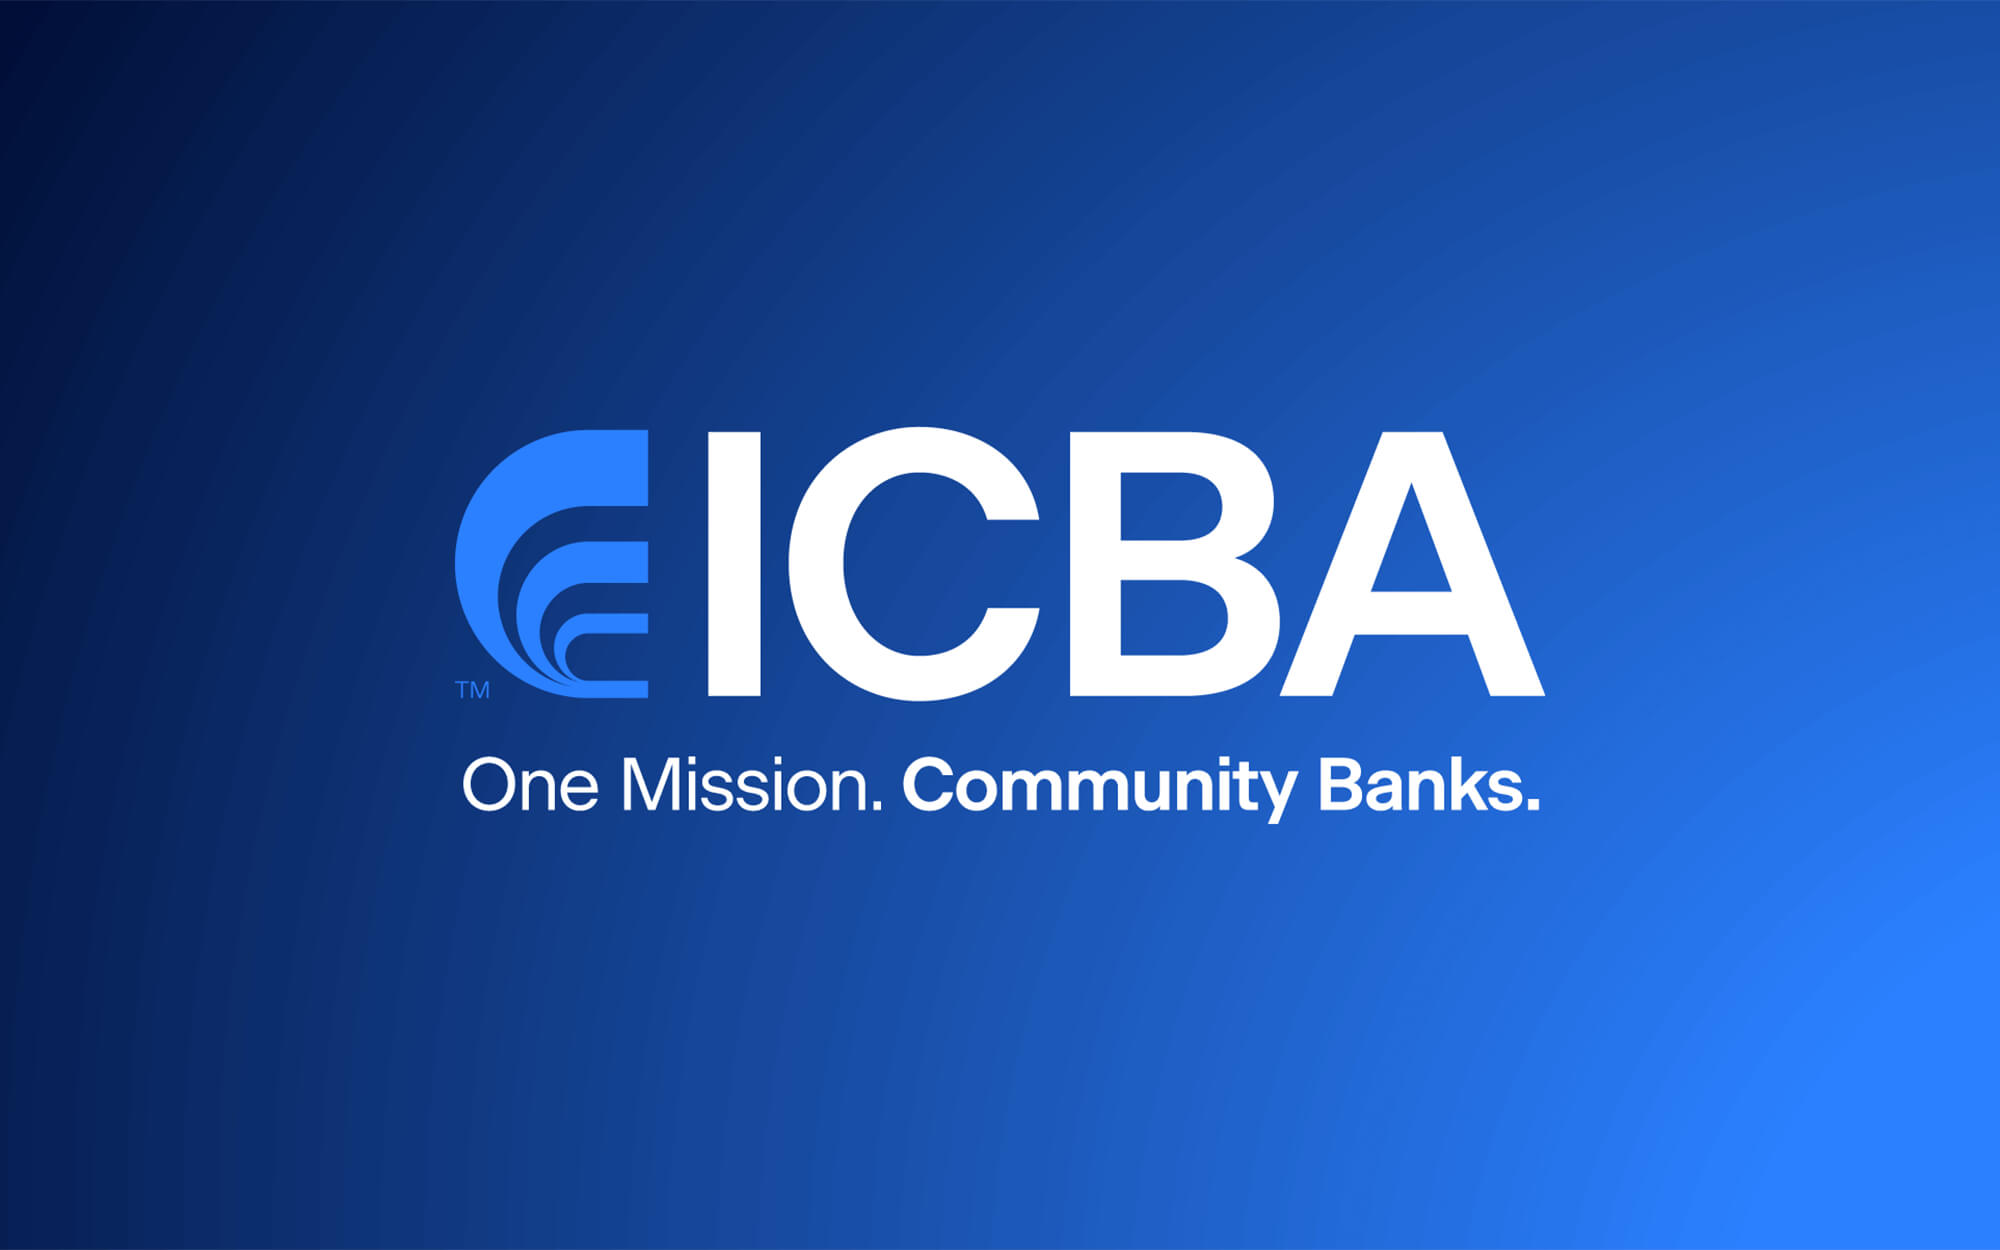 ICBA logo on blue background